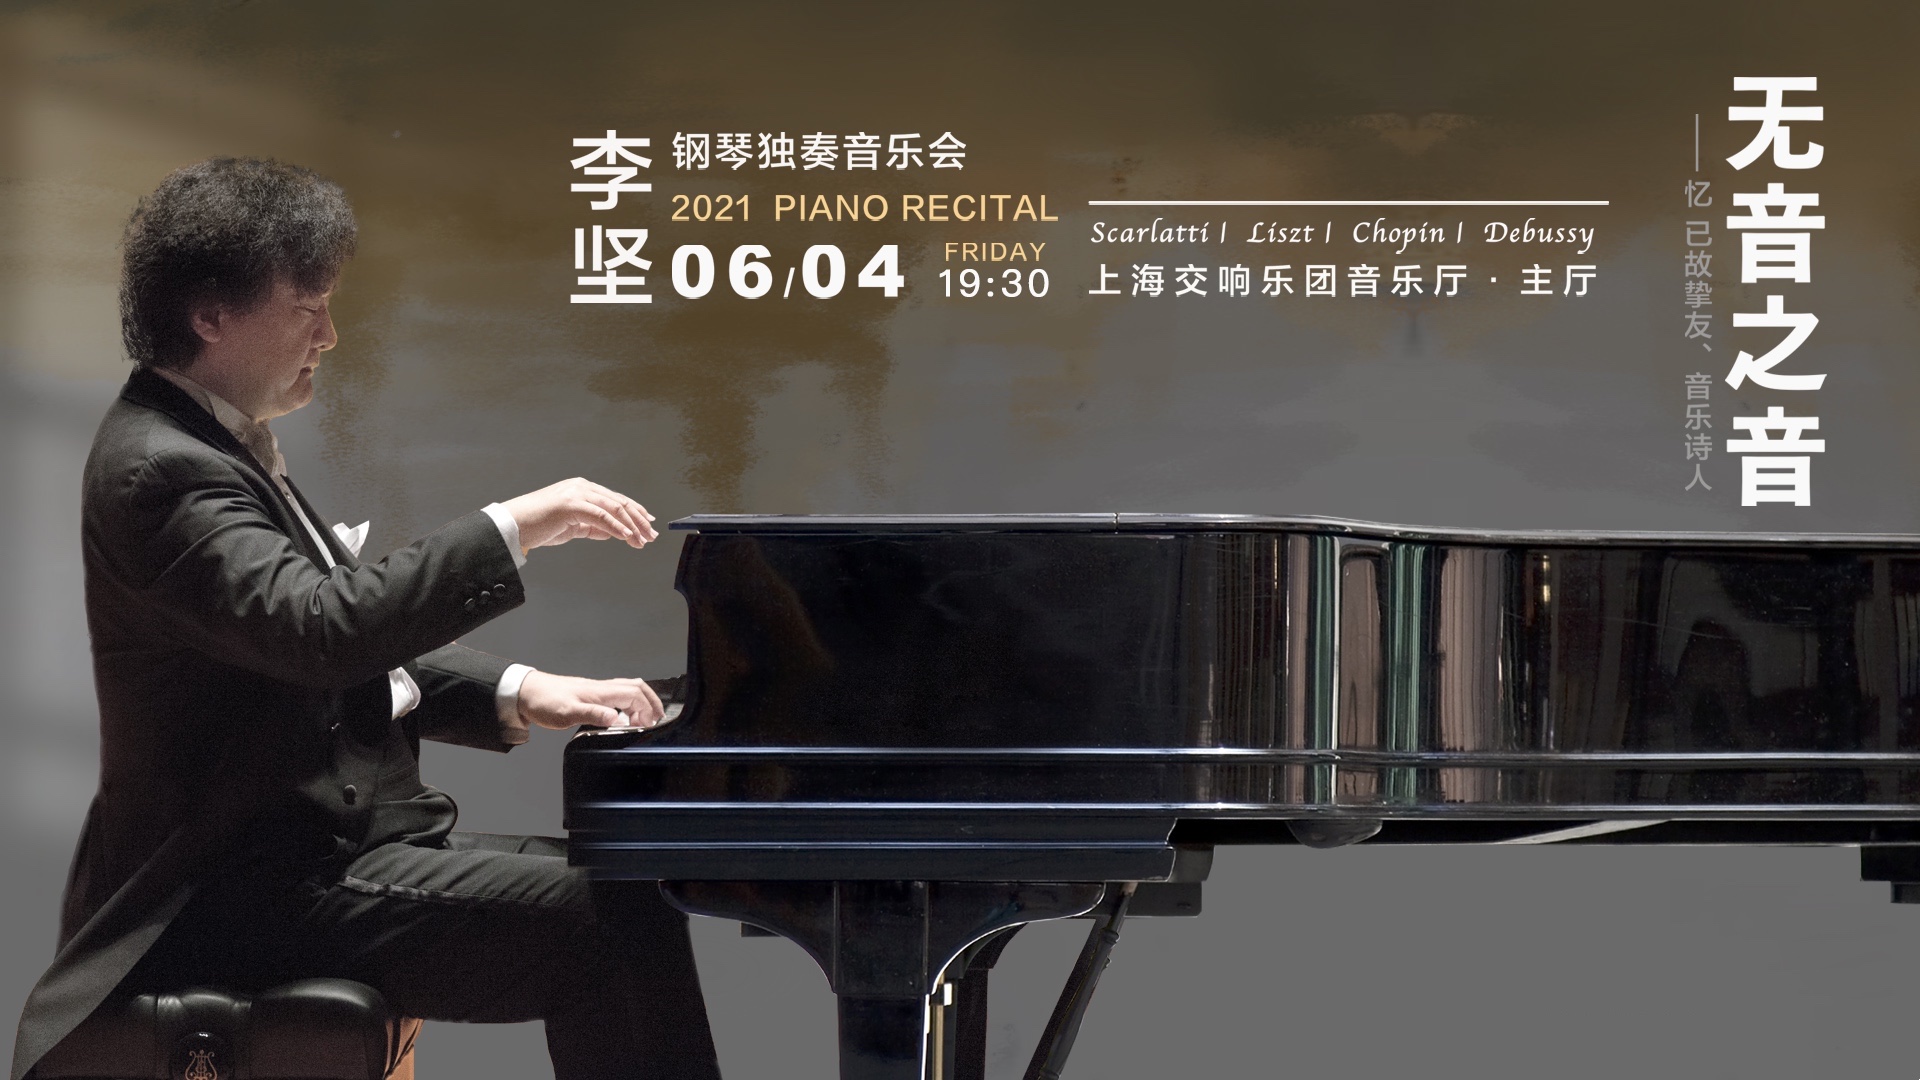 “李坚钢琴独奏音乐会”6月4日将在上海奏响，以“无音之音”之名追忆已故挚友、音乐诗人傅聪